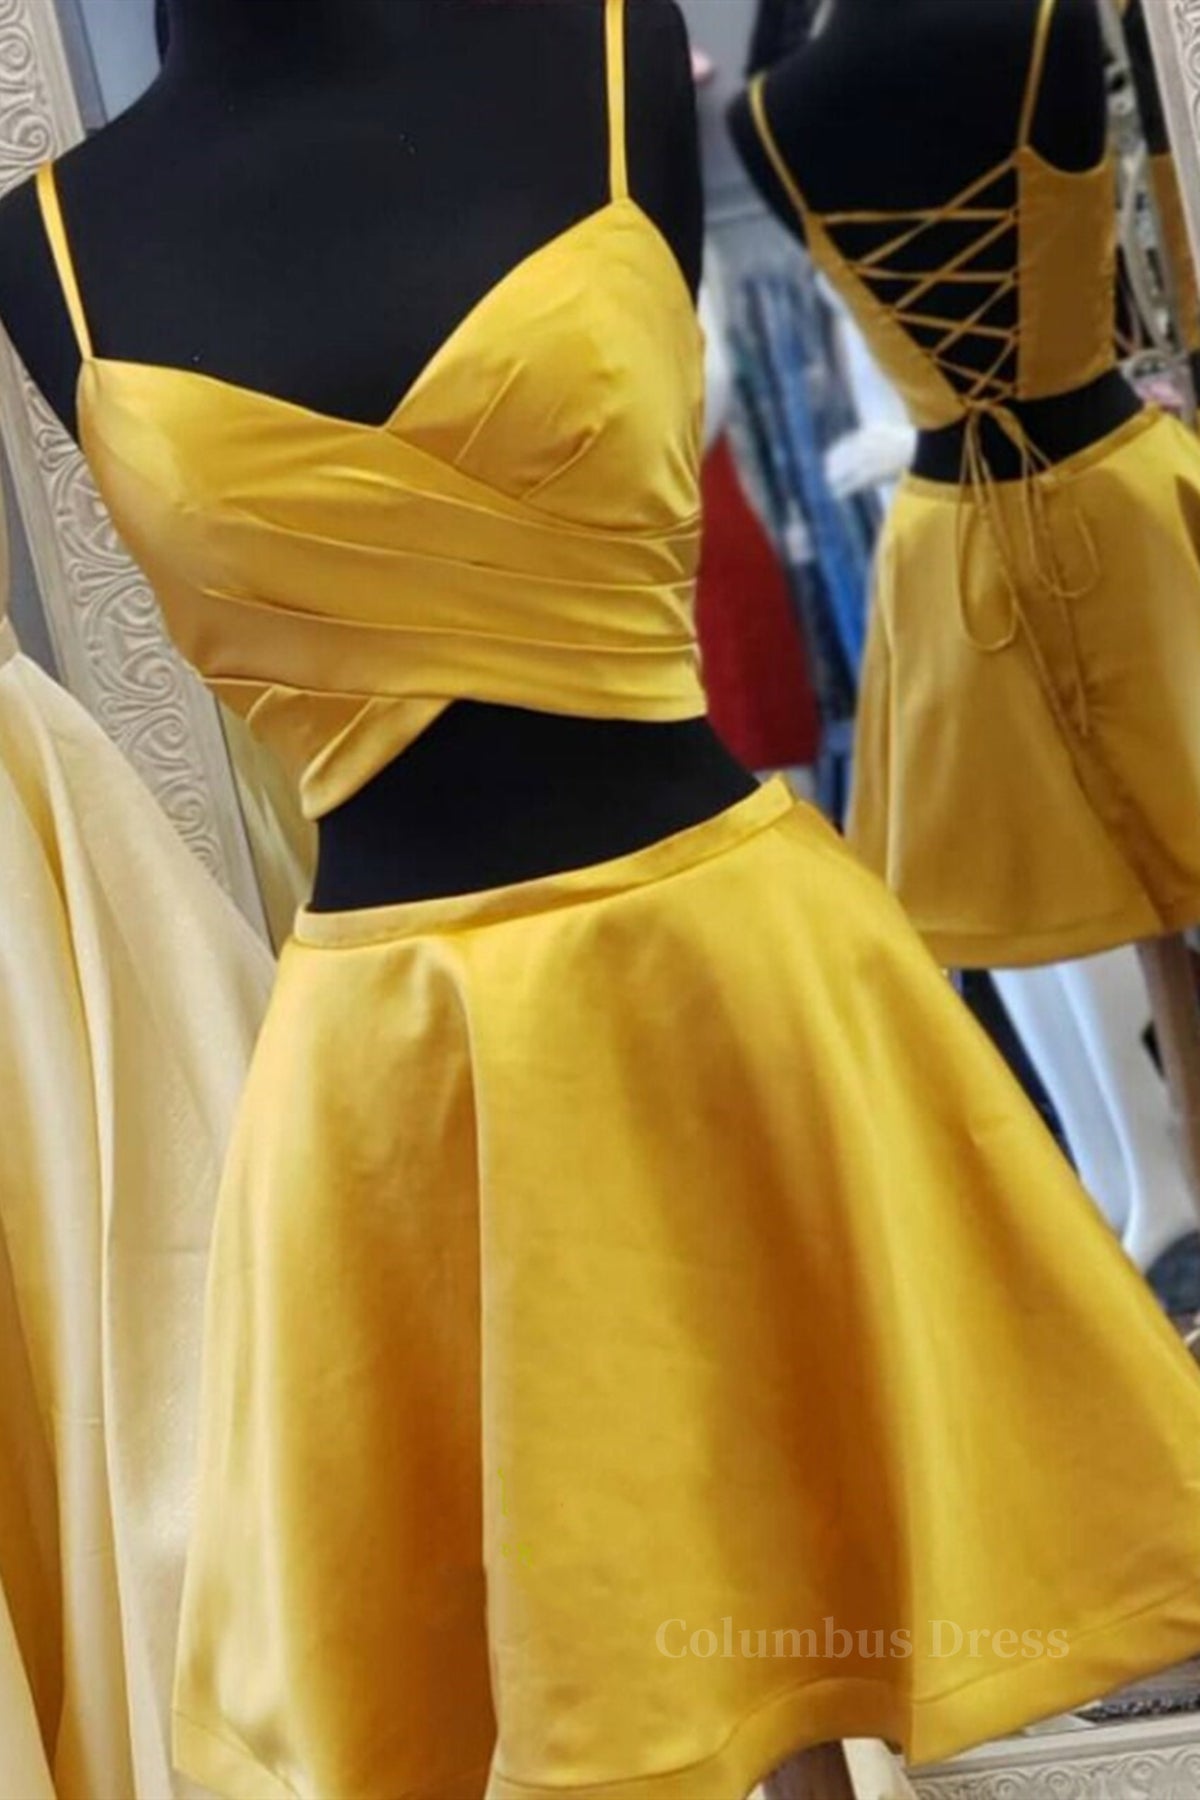 Formal Dresses Australia, Two Pieces Short Yellow Prom Dresses, Short Yellow 2 Pieces Formal Homecoming Dresses